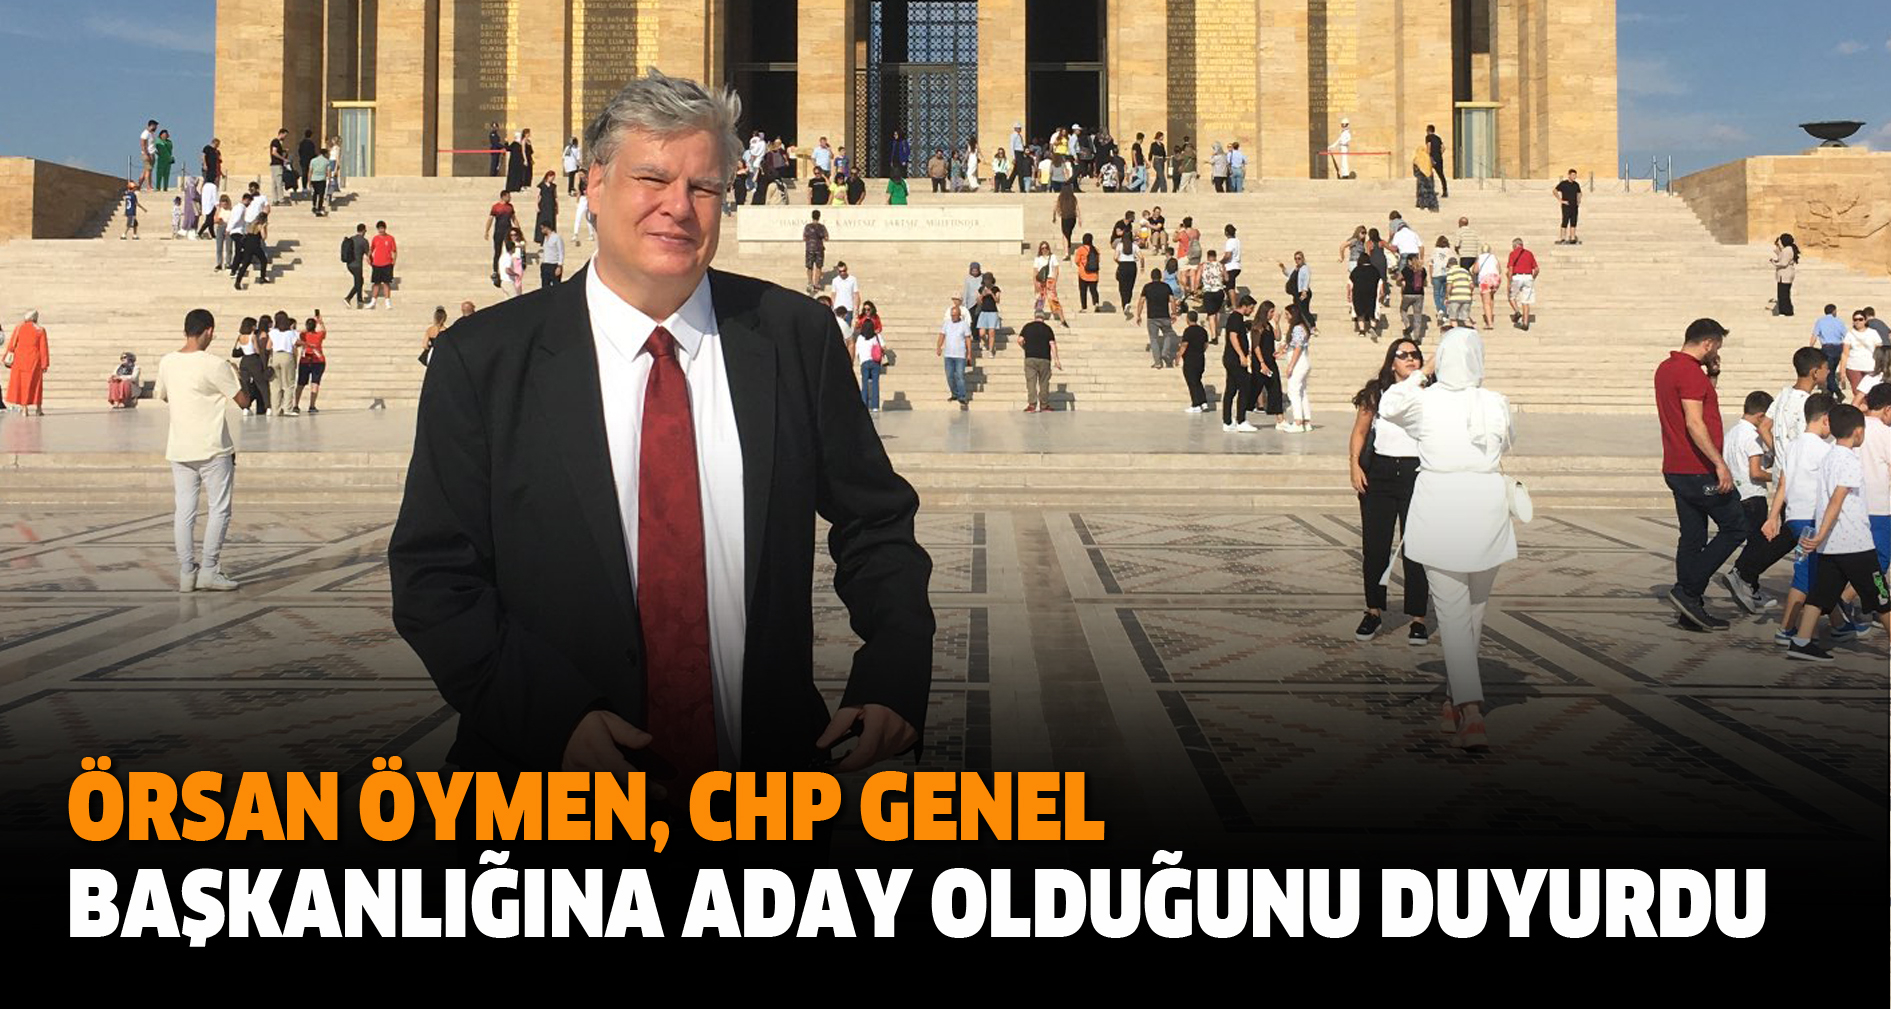 Örsan Öymen, CHP Genel Başkanlığına Aday Olduğunu Duyurdu